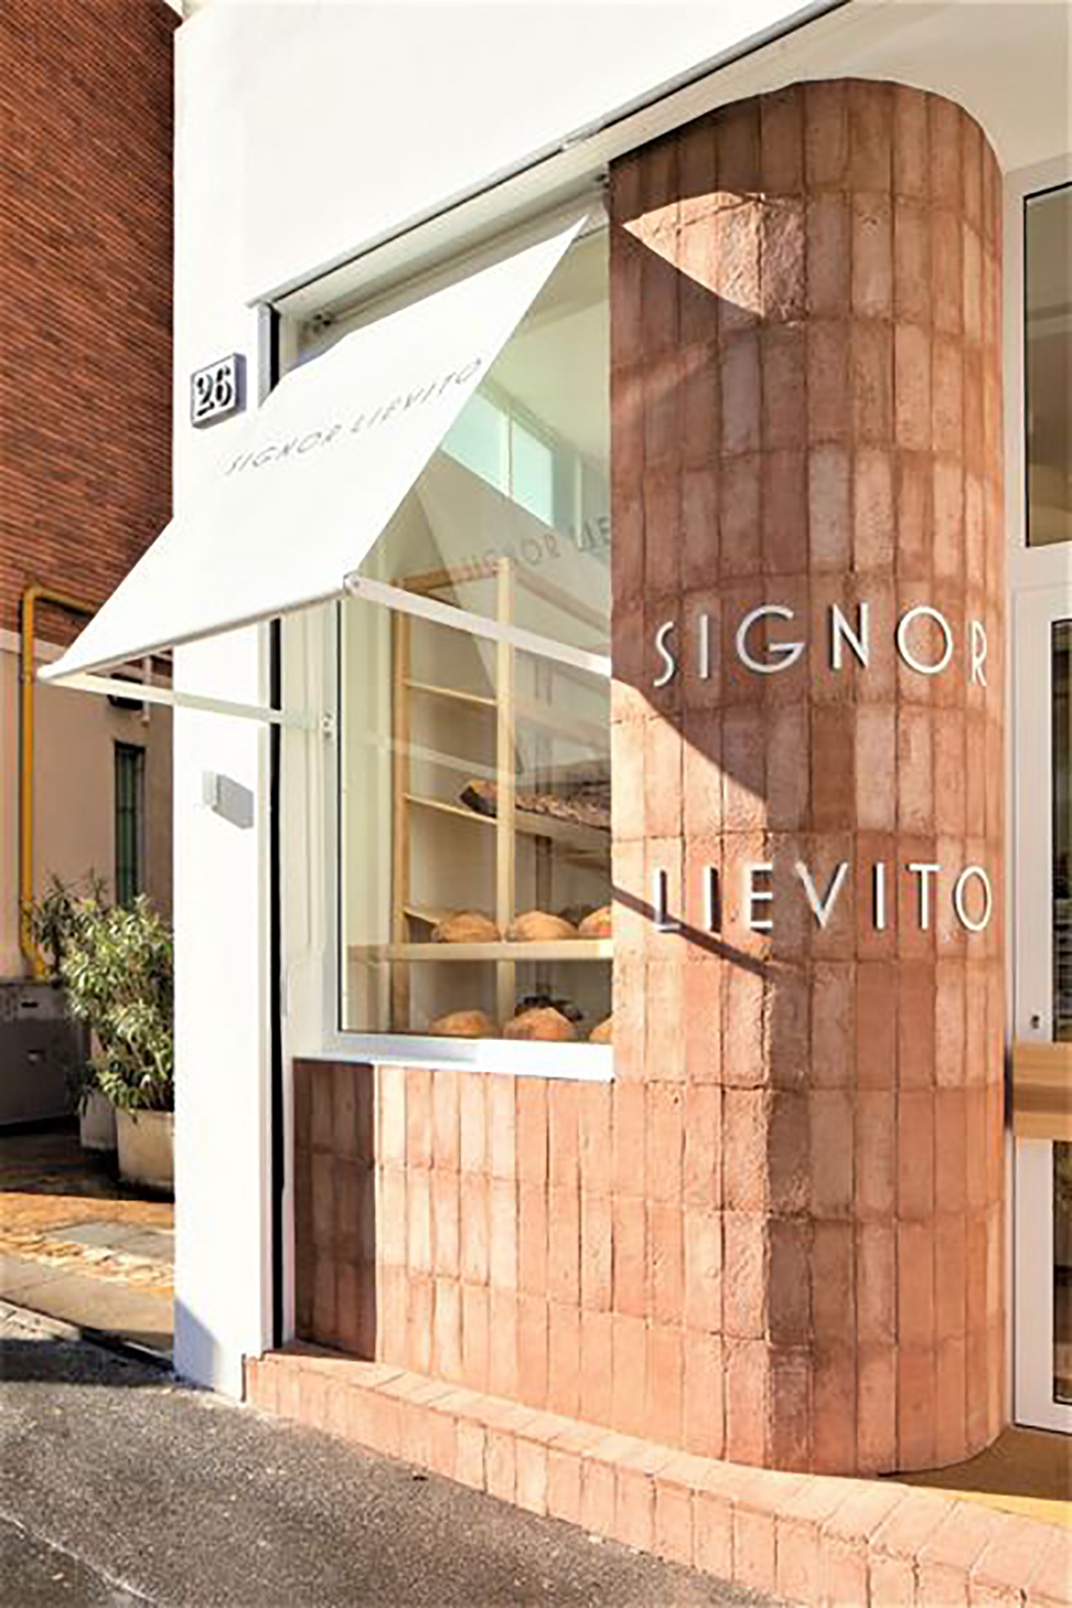 大发酵的面包店Signor Lievito 意大利 北京 面包店 红砖 木色 logo设计 vi设计 空间设计